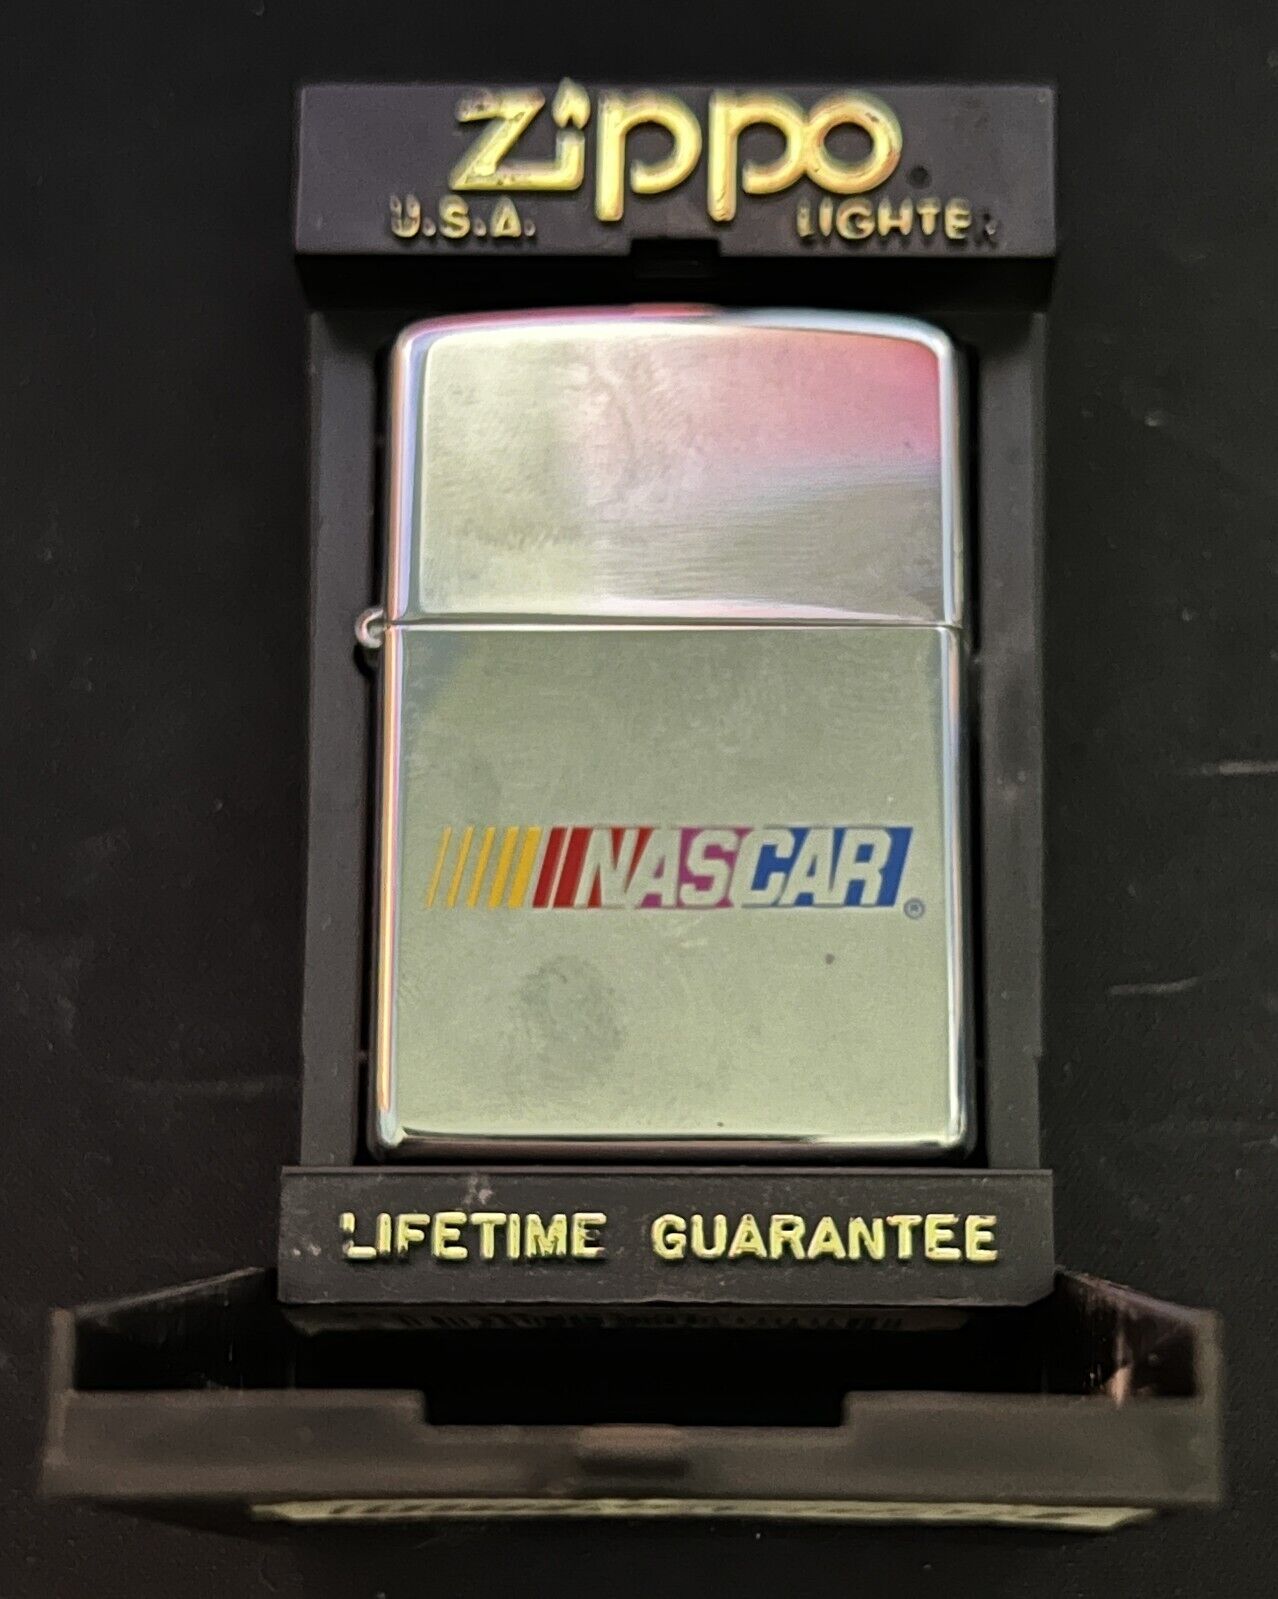 Zippo Lighter 1995 Nascar Original Box